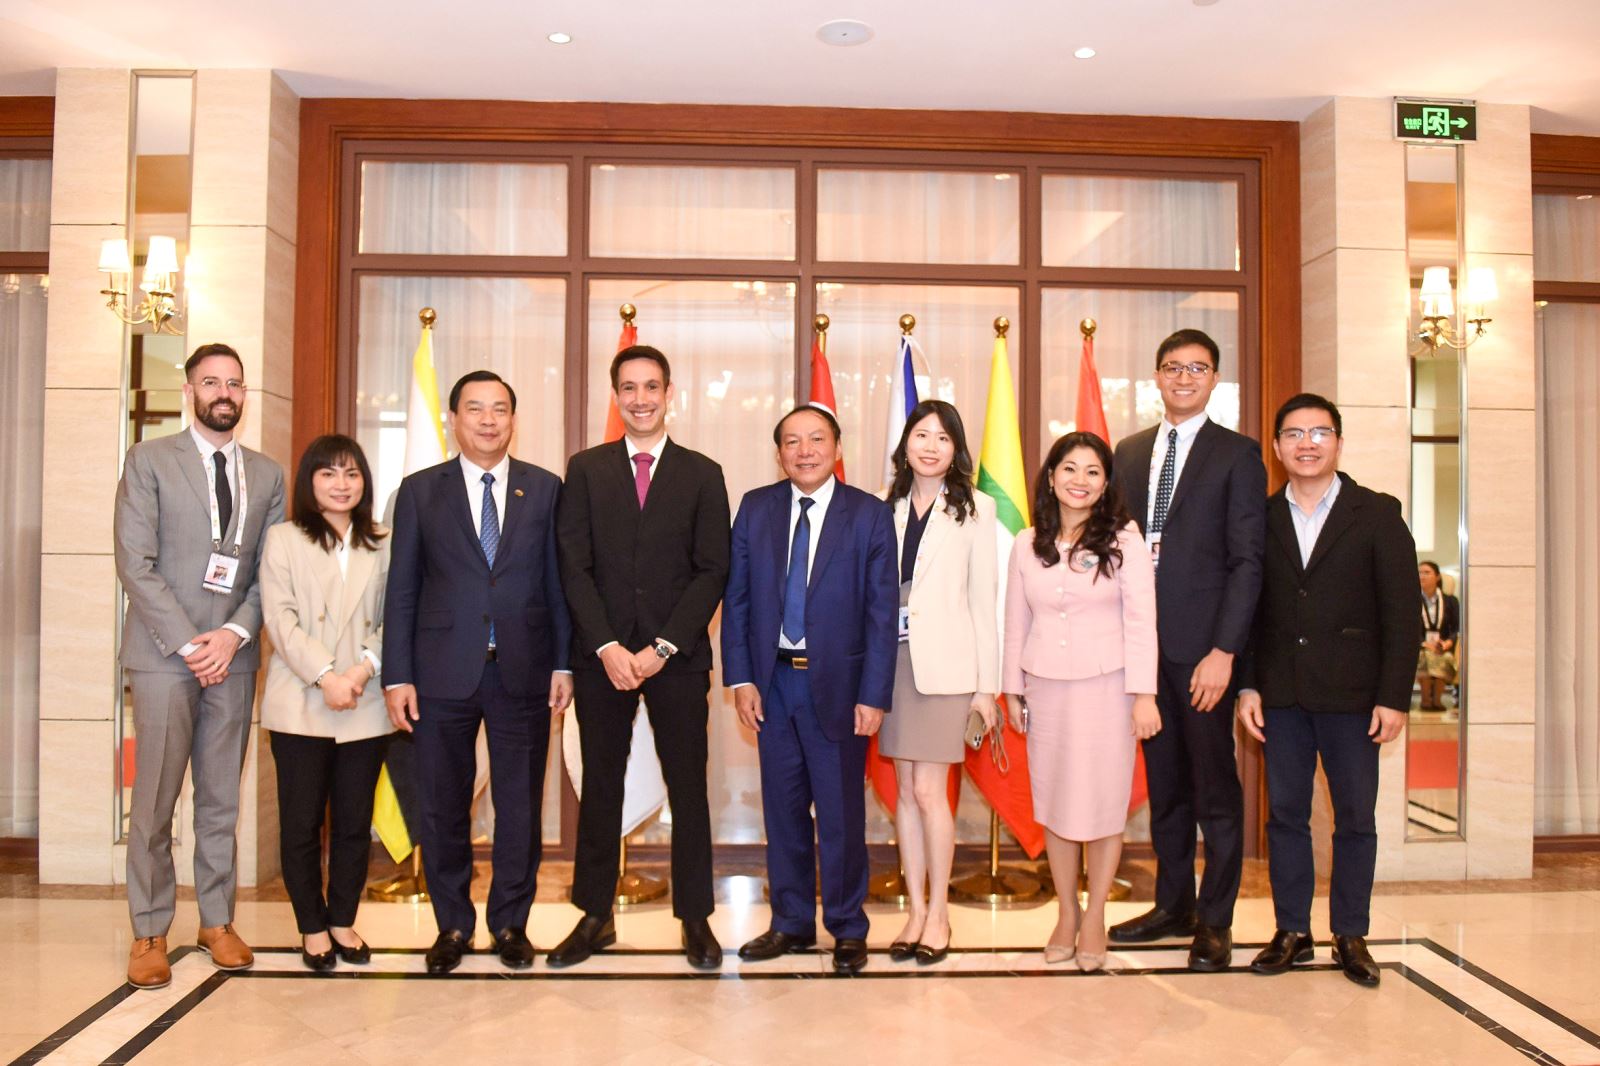 Bộ trưởng Nguyễn Văn Hùng: Kỳ vọng Agoda liên kết với nhiều tỉnh, thành của Việt Nam để phát triển du lịch  bền vững